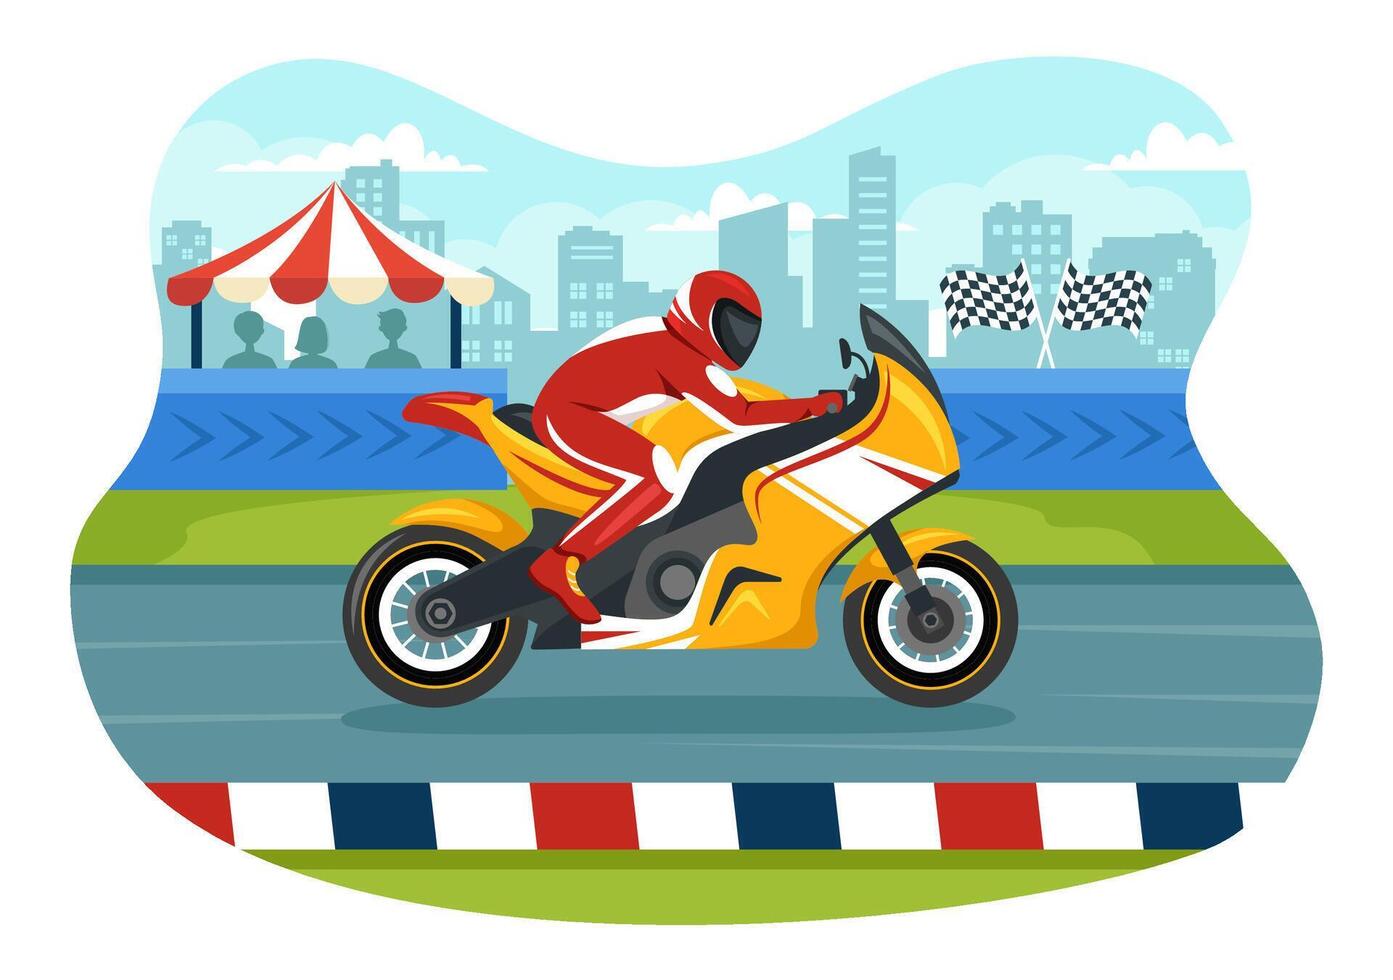 corrida motosport Rapidez bicicleta vetor ilustração para concorrência ou campeonato raça de vestindo roupa de esporte e equipamento dentro plano desenho animado fundo